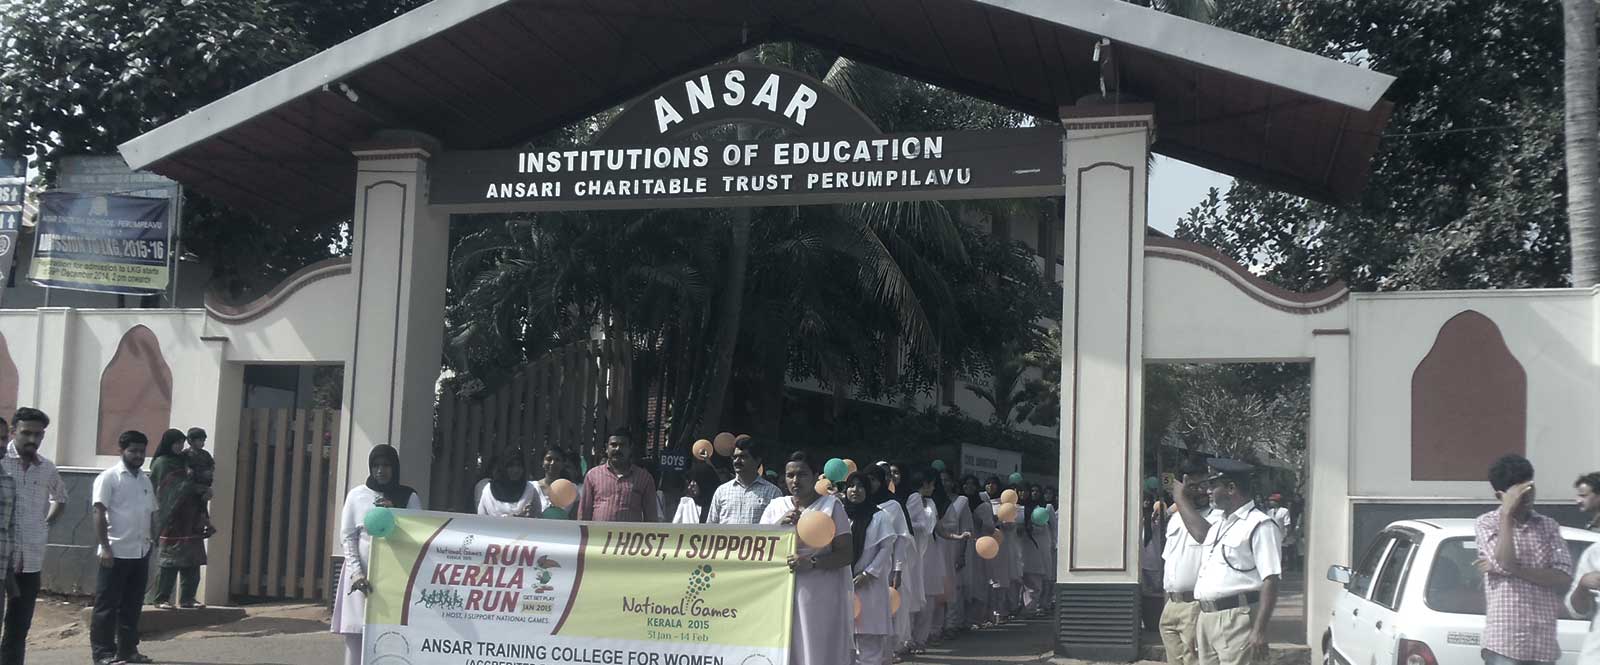 Ansar Training College for Women, Thrissur